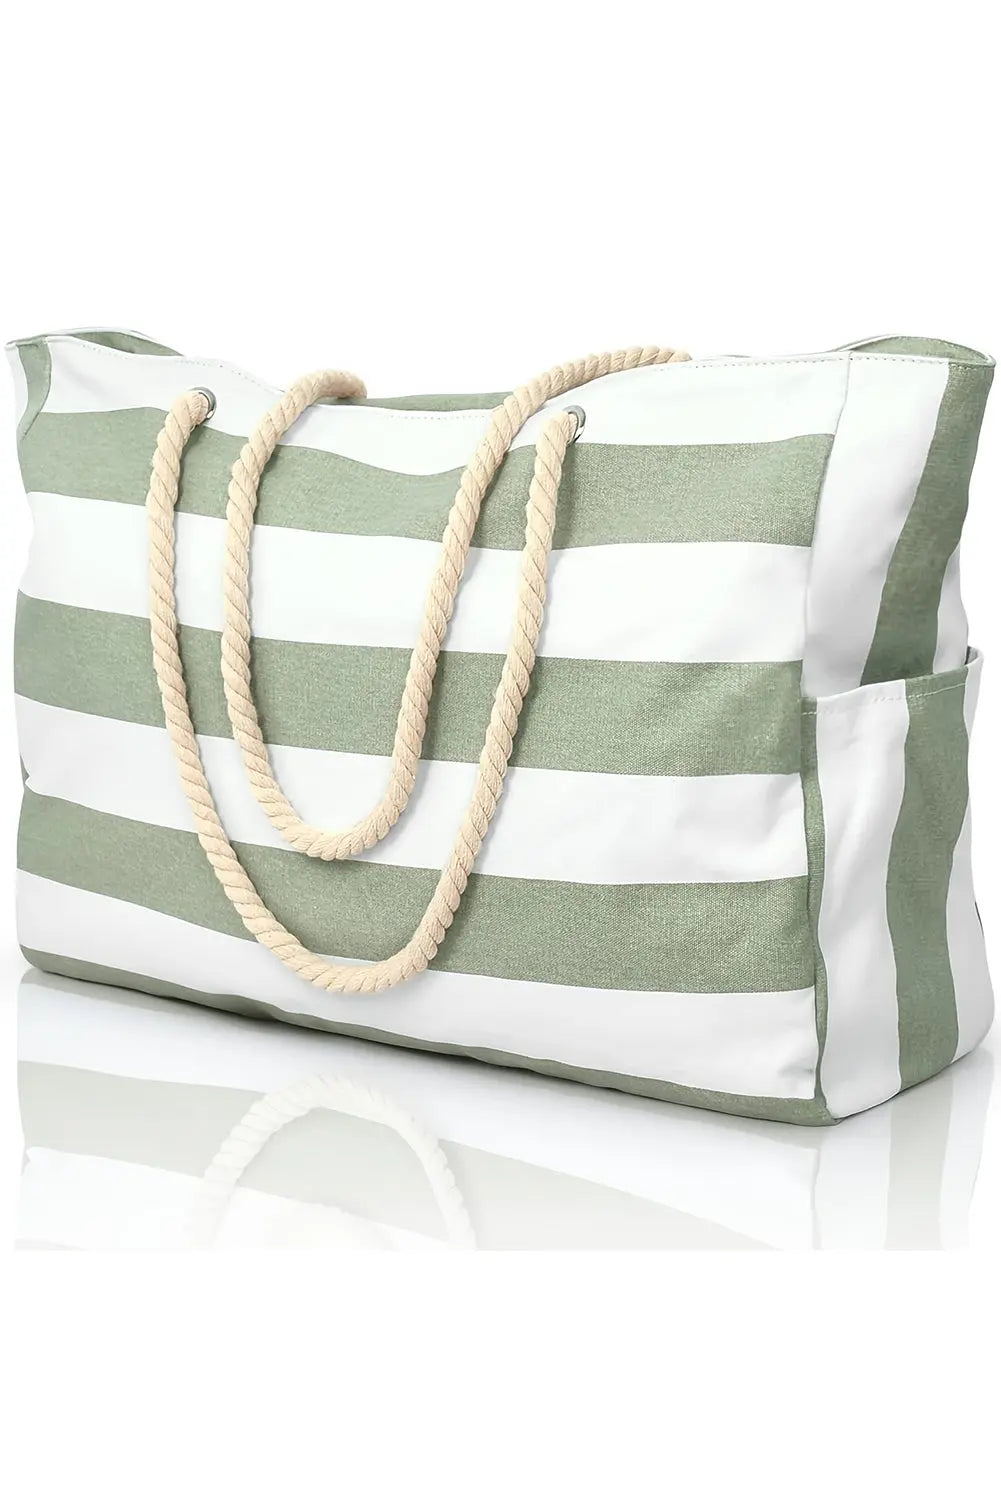 Grand sac fourre-tout en toile avec poignée en corde rayée vert herbe La Mode XL